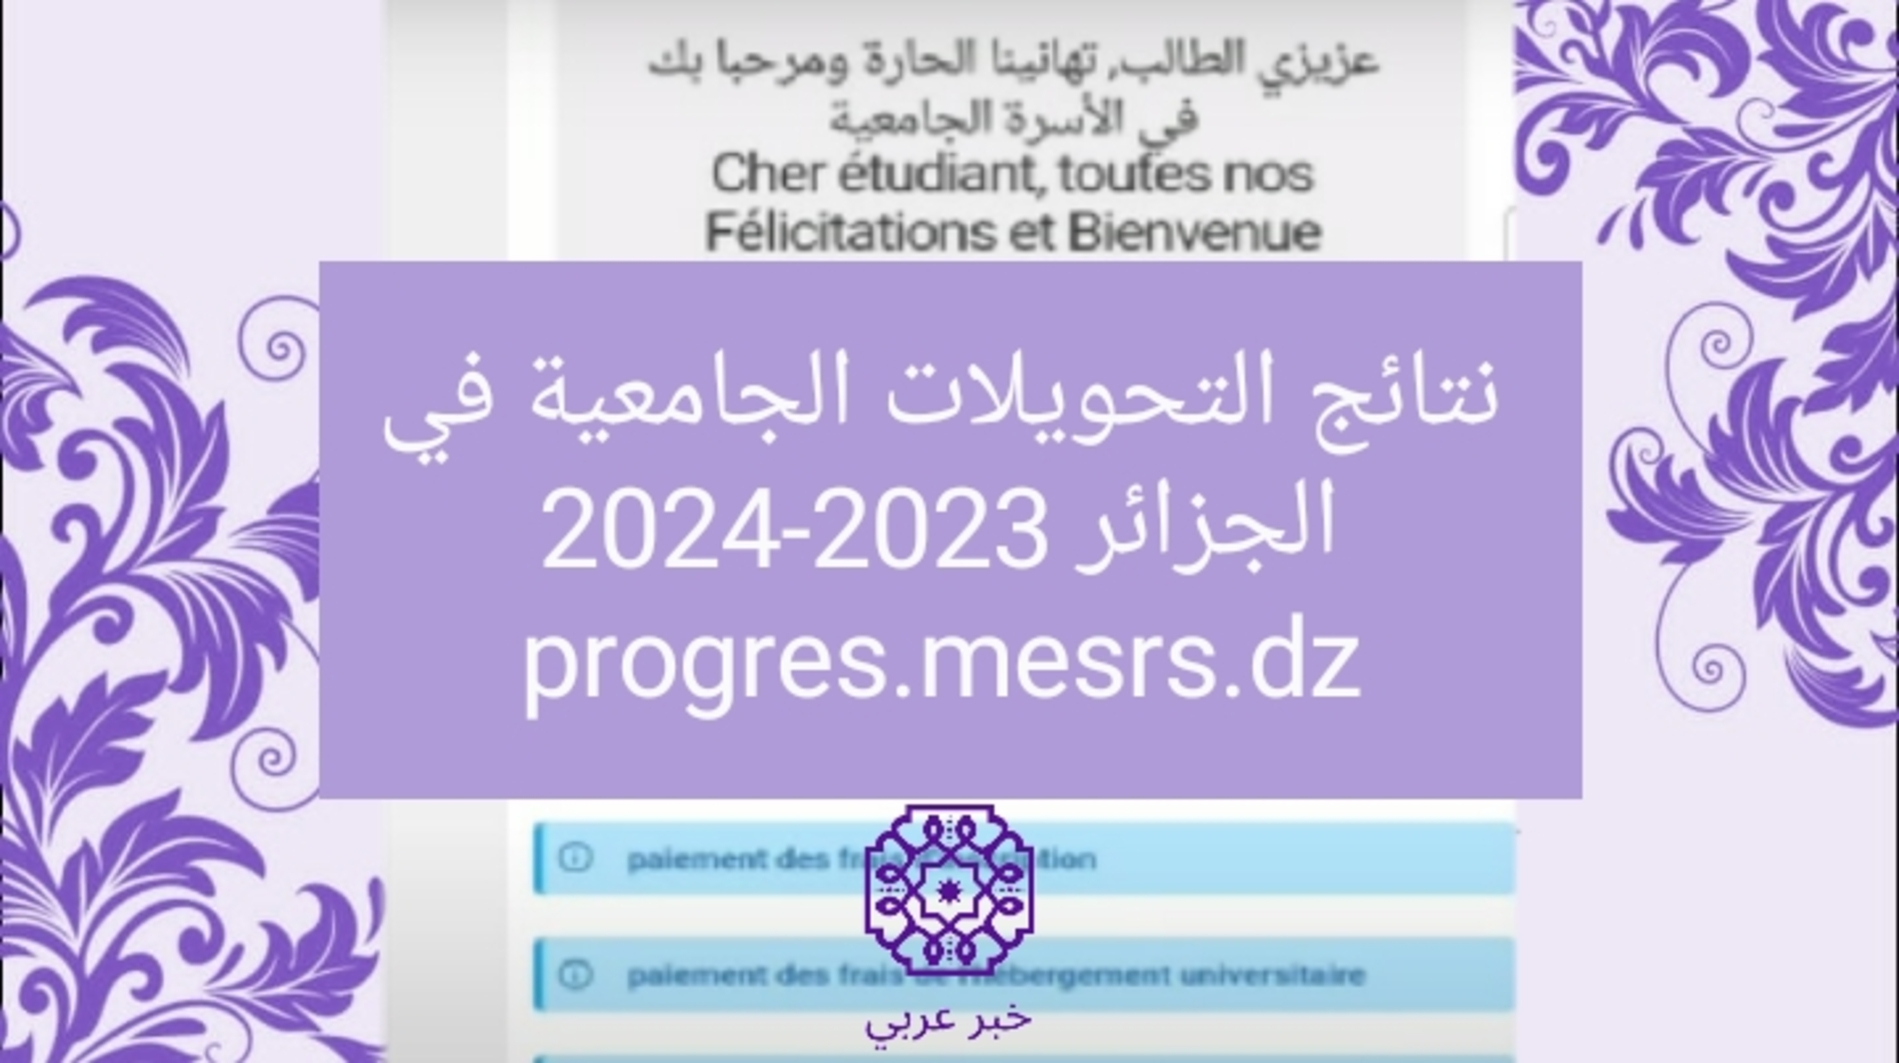 رابط موقع نتائج التحويلات الجامعية في الجزائر 2023-2024 progres.mesrs.dz